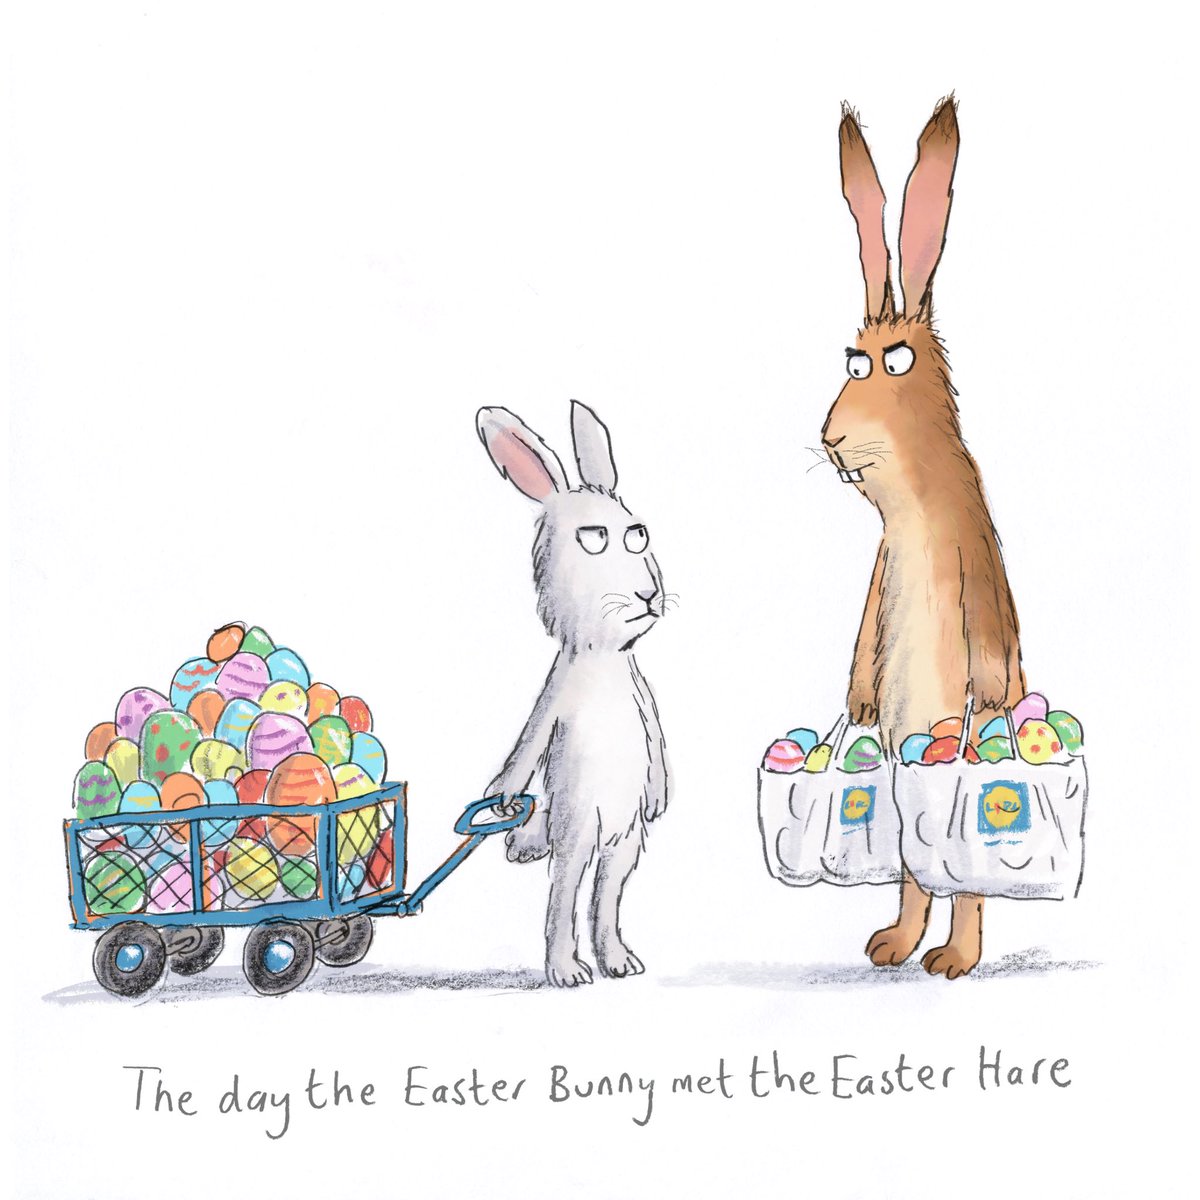 Happy Easter!

#kidlitart #illustration #easter #pasqua #pascua #pâques #kidlitillustration #kidlitartpostcard #illustrationjeunesse #easterbunny #easterhare #eastereggs #childrensbookillustrator